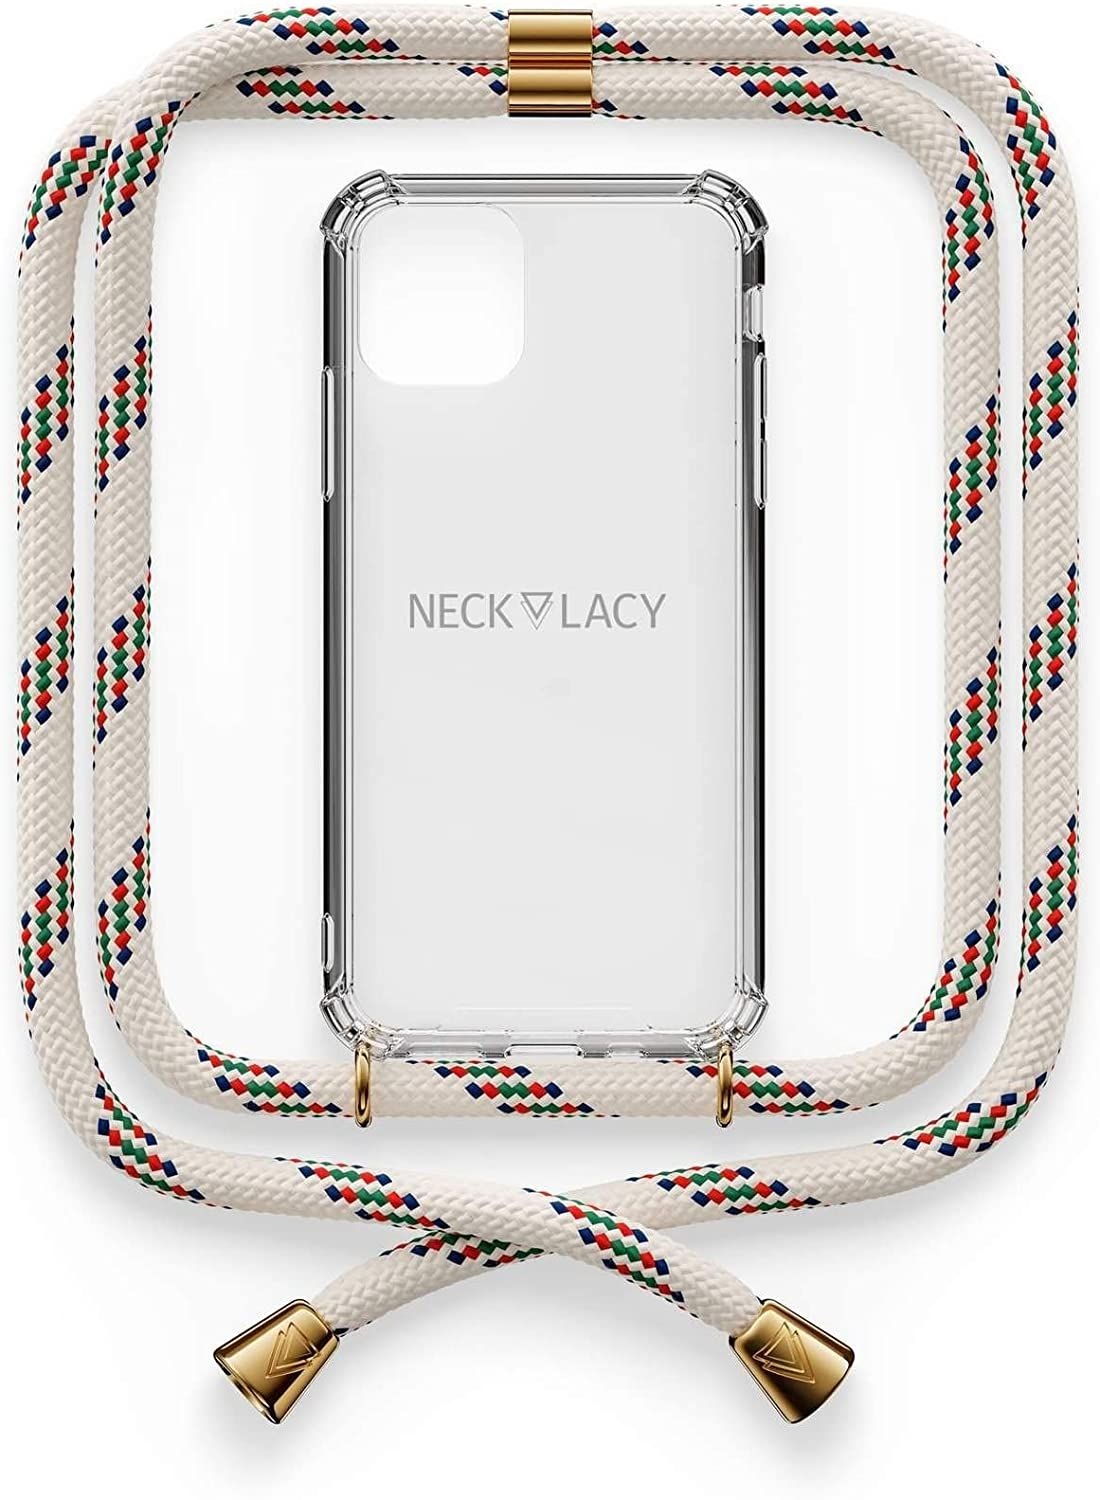 NECKLACY Handykette Handyhülle zum umhängen - für iPhone 11 - Case / Handyhülle mit Band zum umhängen - Trageband Hals mit Kordel - Smartphone Necklace, Classic Birch